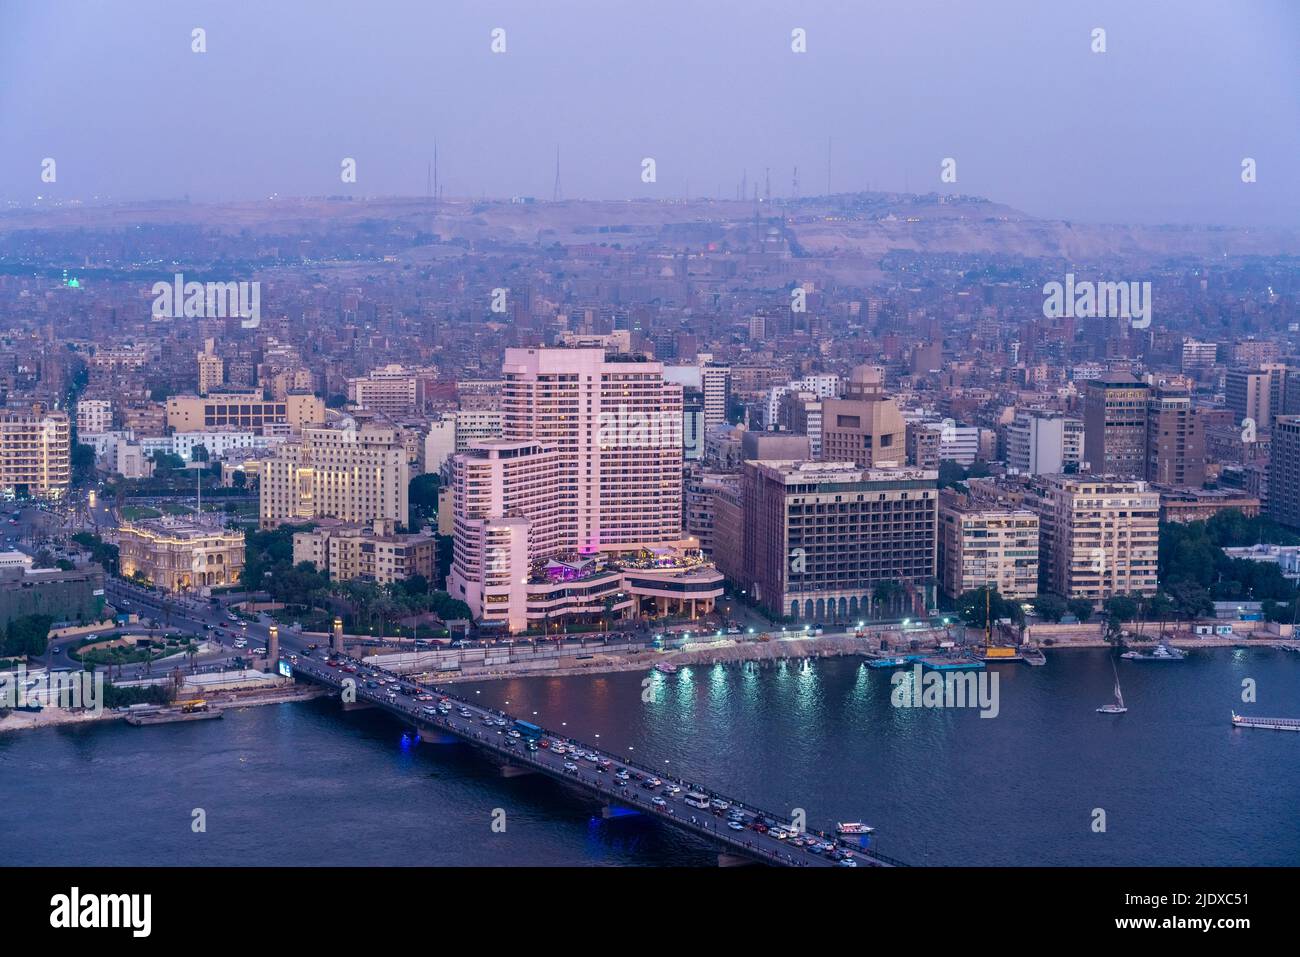 Égypte, le Caire, le Nil, le pont Qasr El Nil et les bâtiments du centre-ville avoisinants au crépuscule Banque D'Images